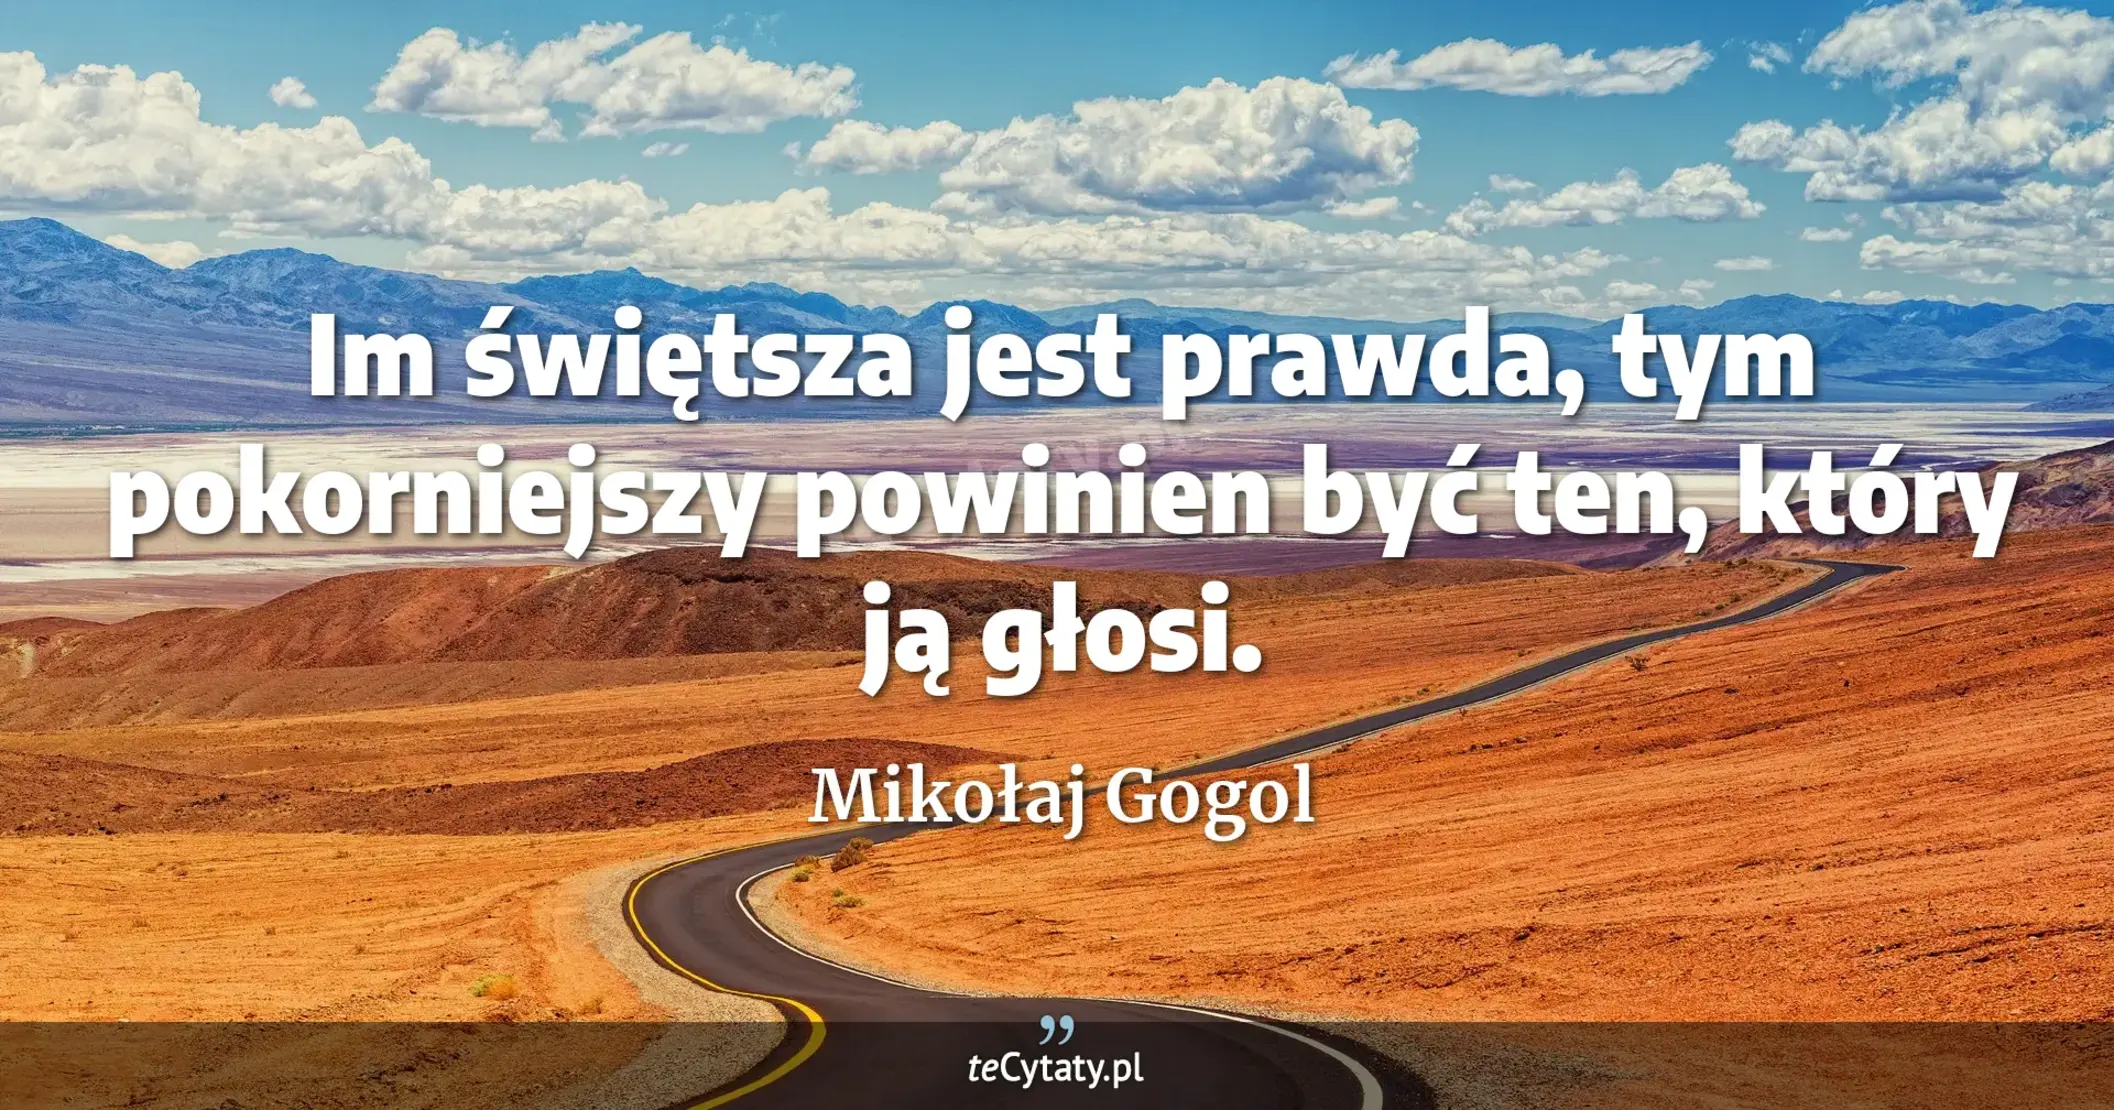 Im świętsza jest prawda, tym pokorniejszy powinien być ten, który ją głosi. - Mikołaj Gogol